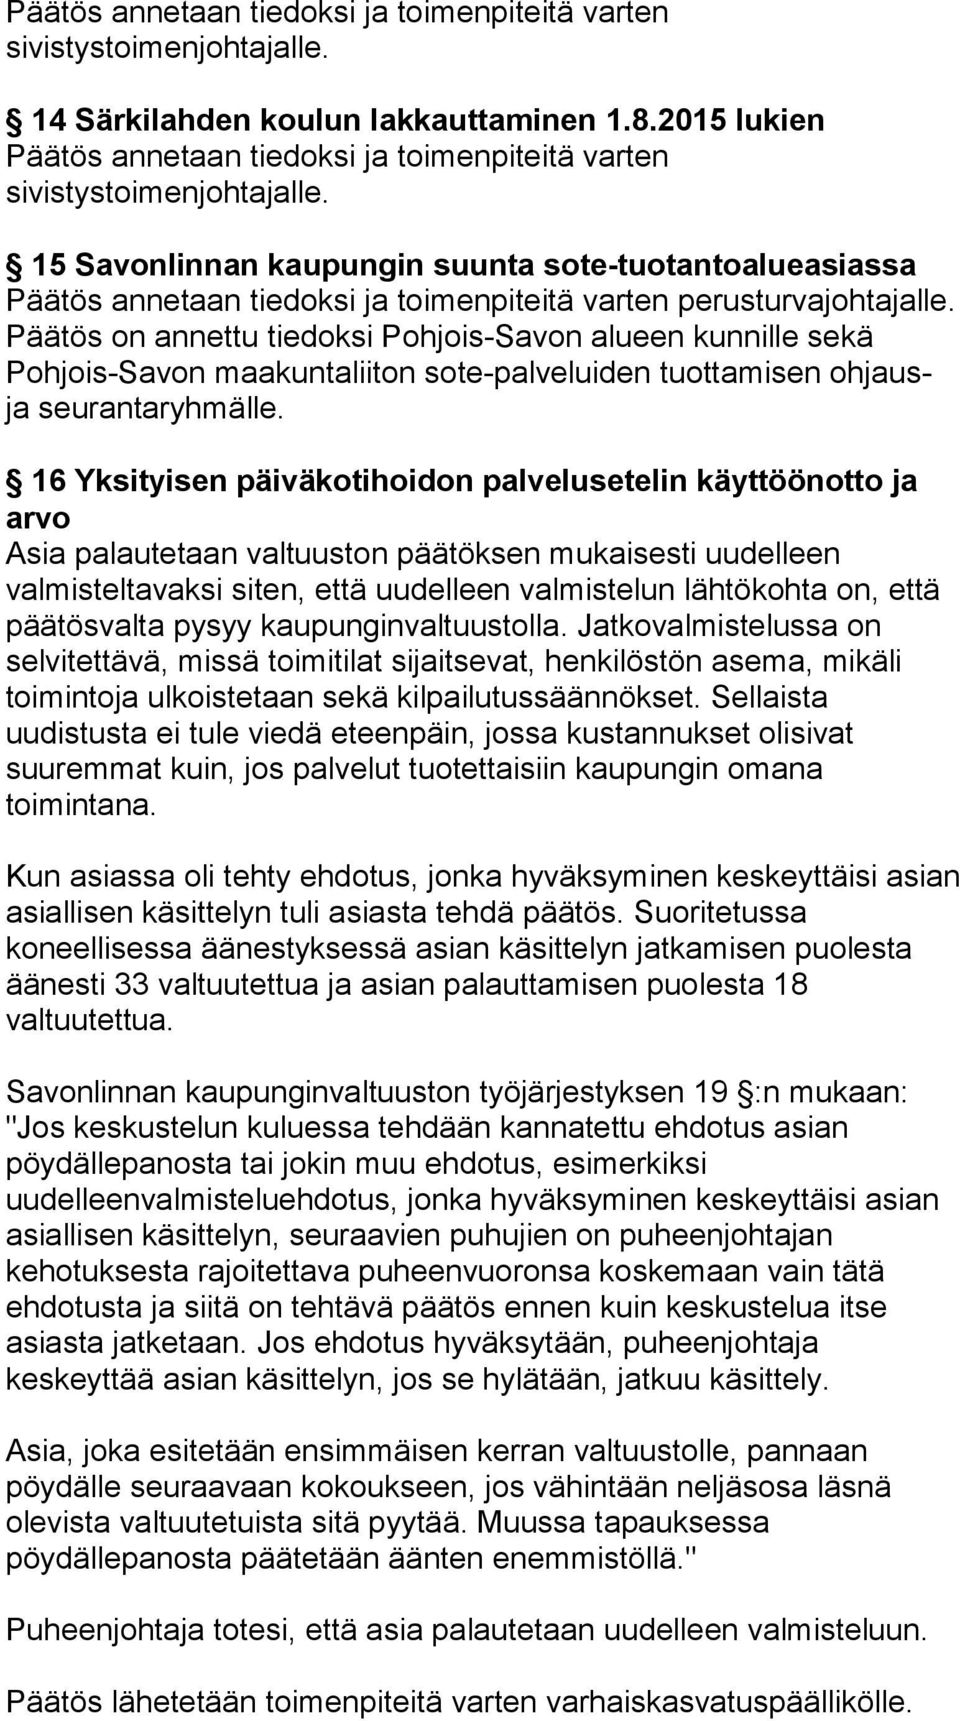 15 Savonlinnan kaupungin suunta sote-tuotantoalueasiassa Päätös annetaan tiedoksi ja toimenpiteitä varten perusturvajohtajalle.